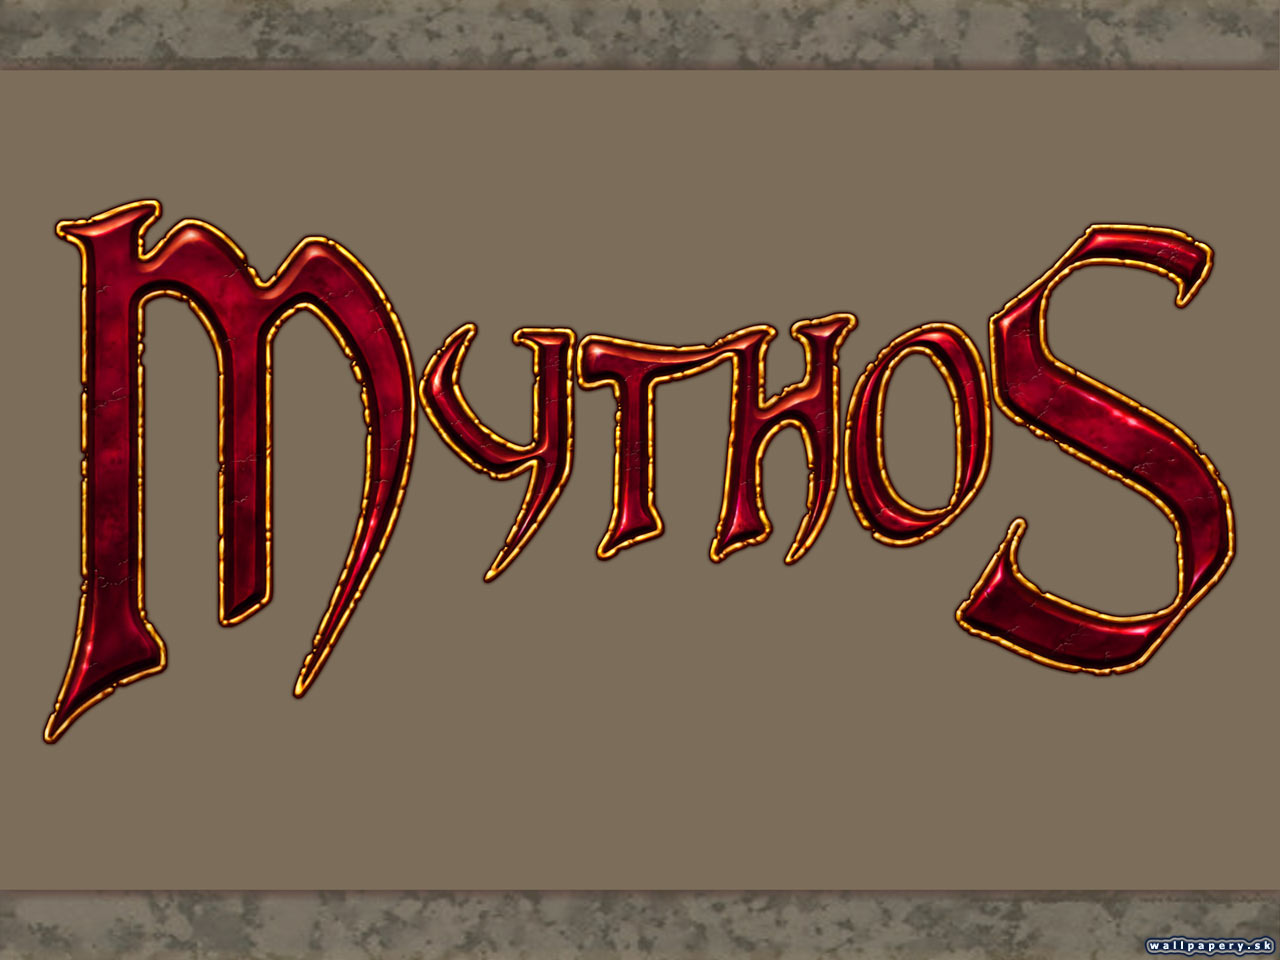 Mythos - wallpaper 3